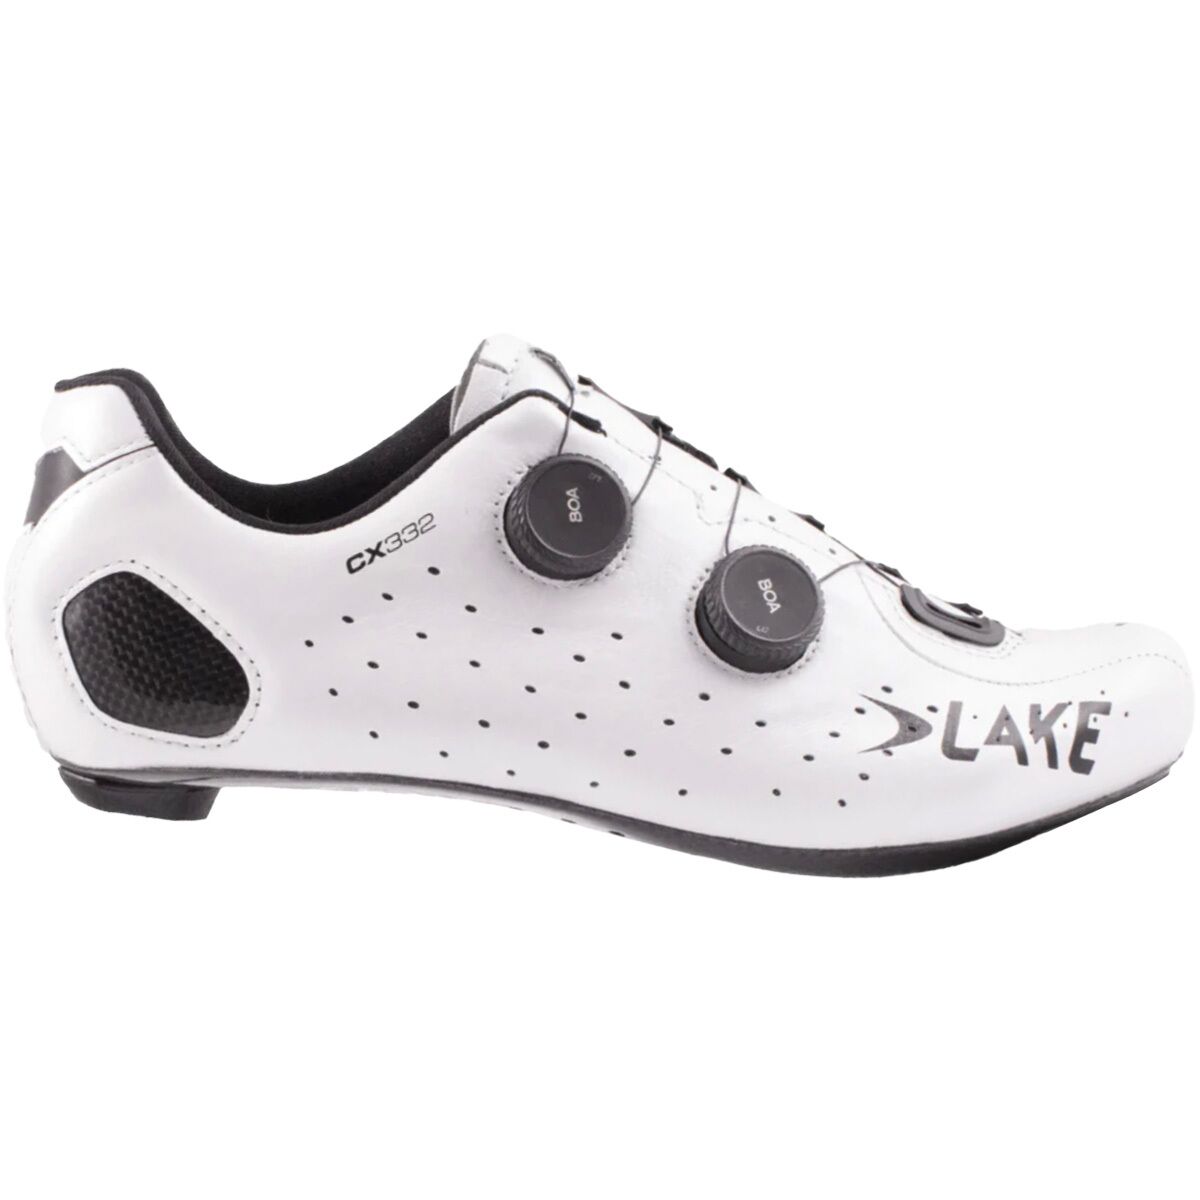 Lake CX332 Cycling Shoe -...